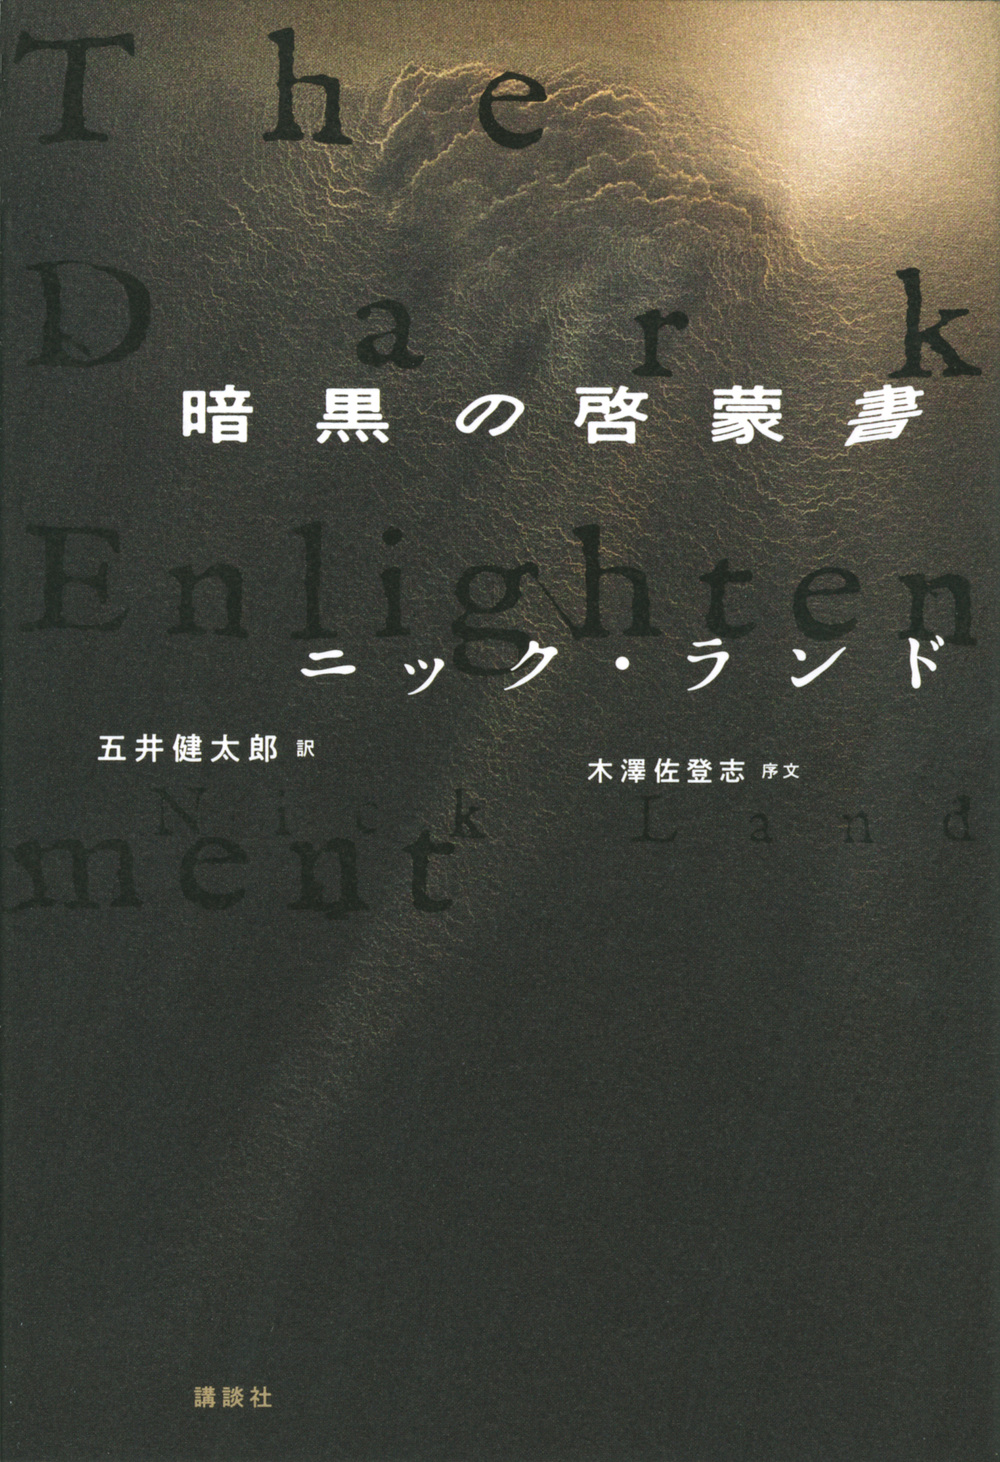 暗黒の啓蒙書の商品画像